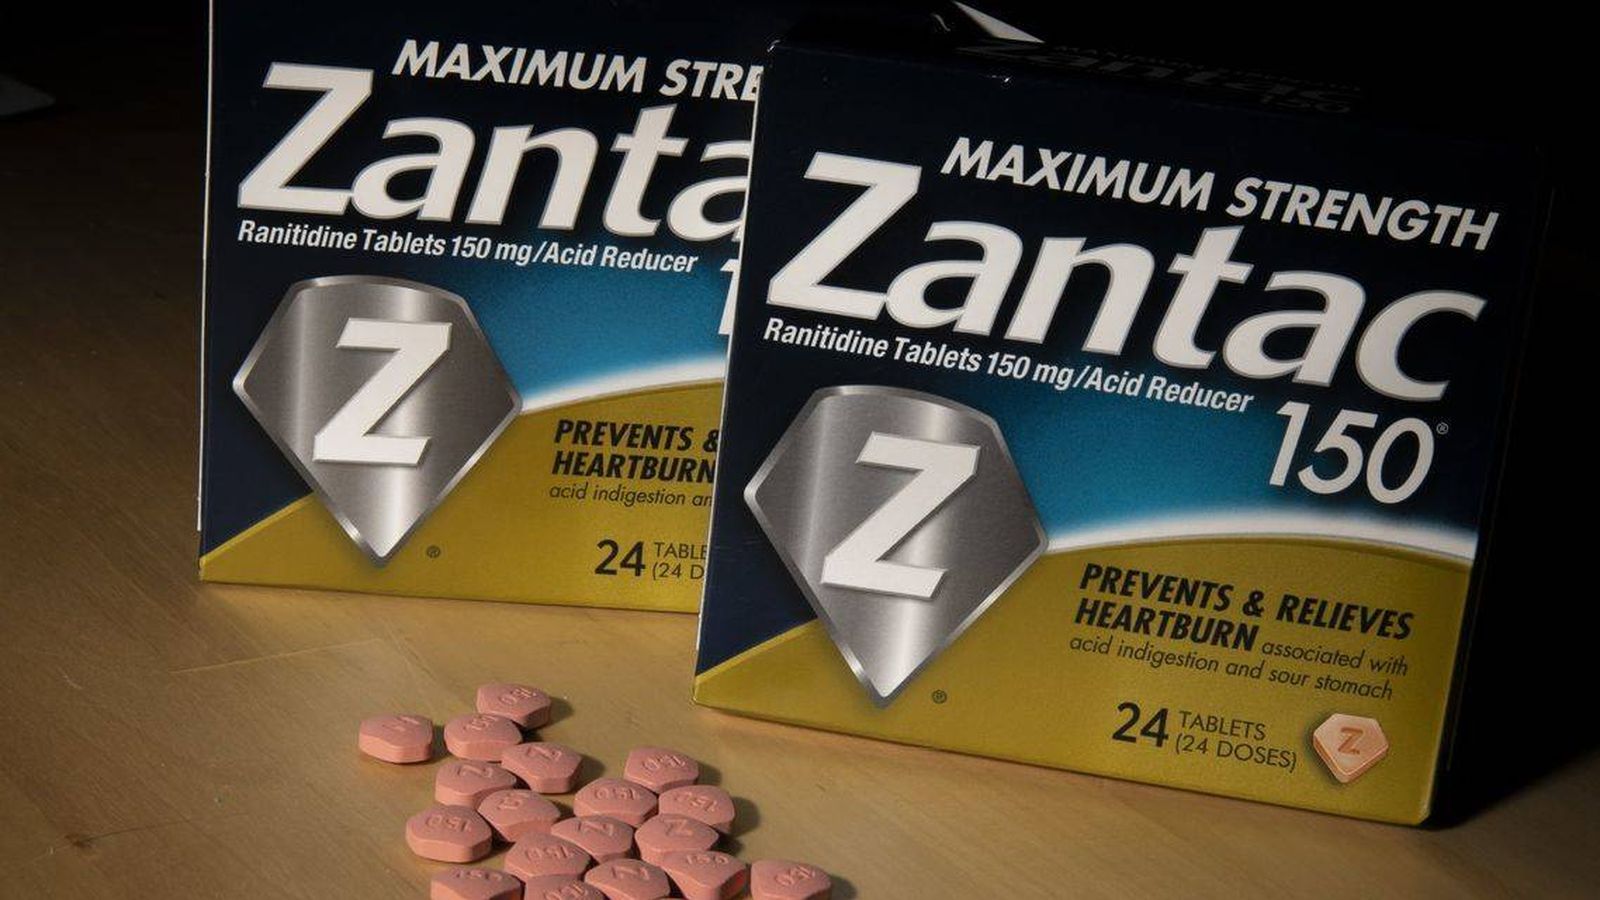 Foto: Zantac es la marca comercial sobre la que se ha lanzado la alerta en Europa y Estados Unidos.